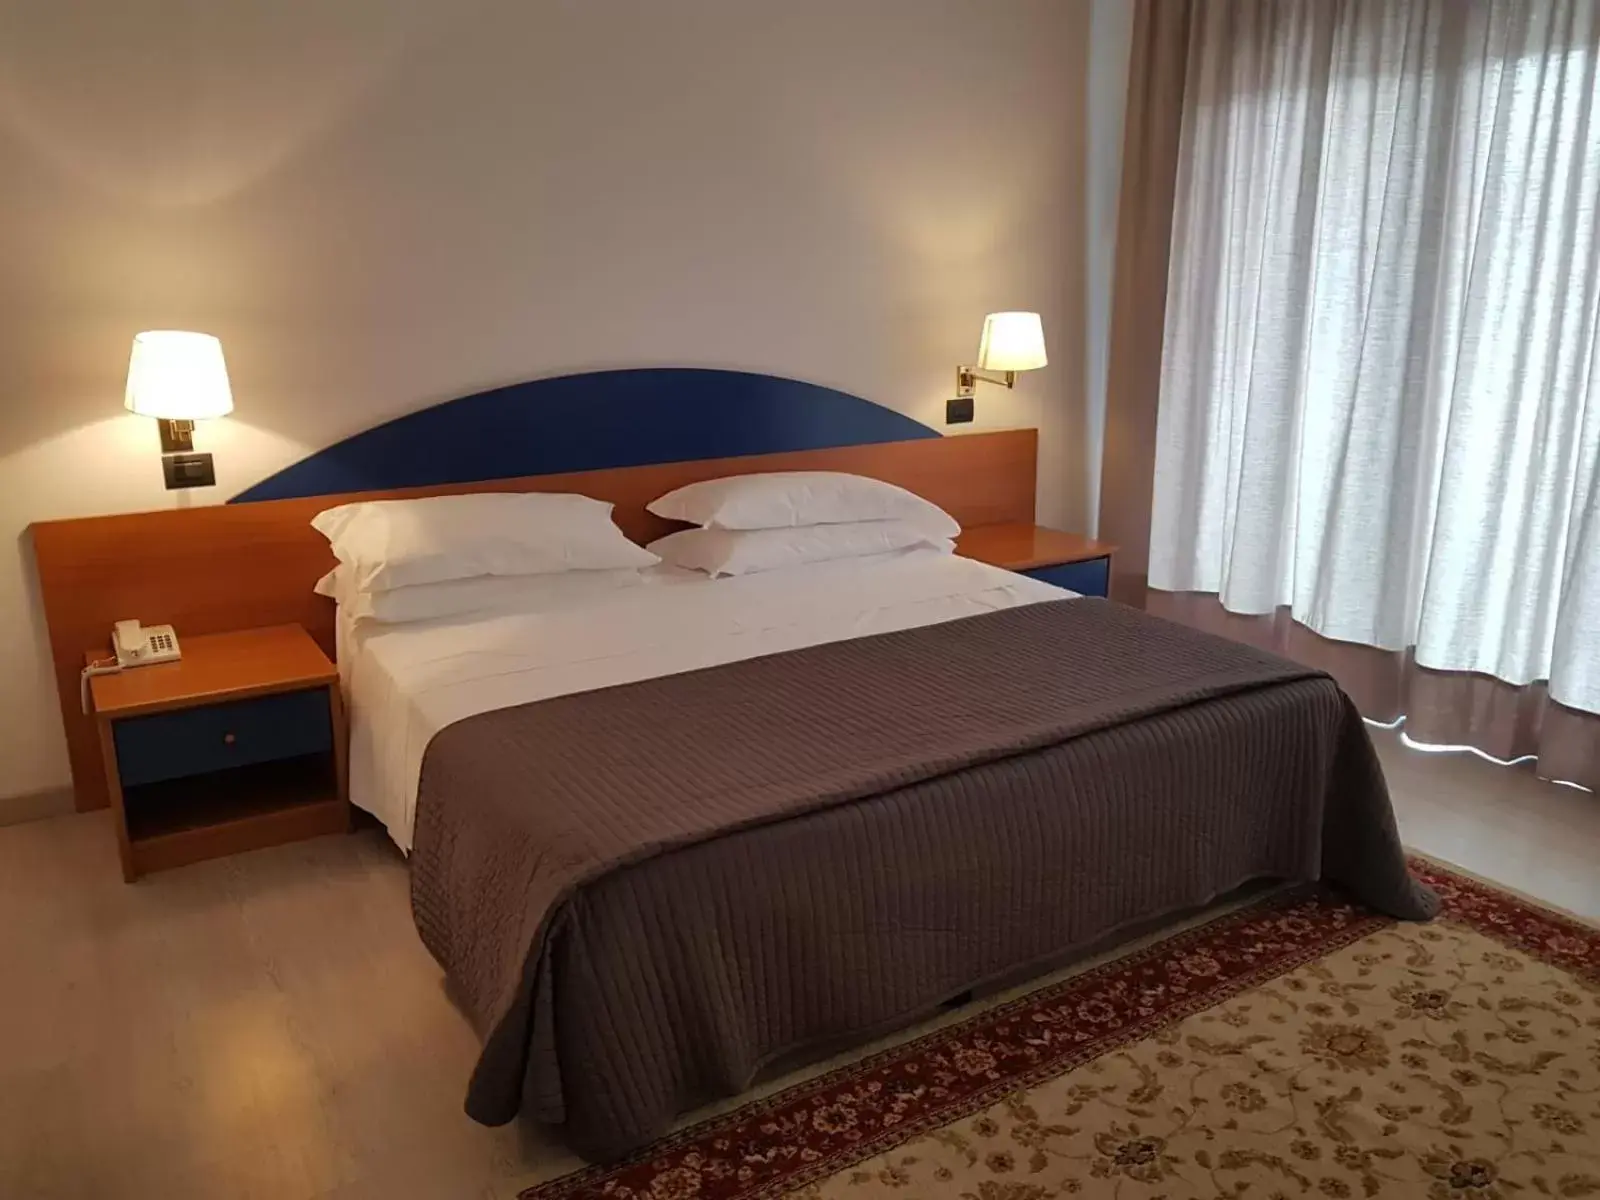 Bedroom, Bed in Roero Park Hotel